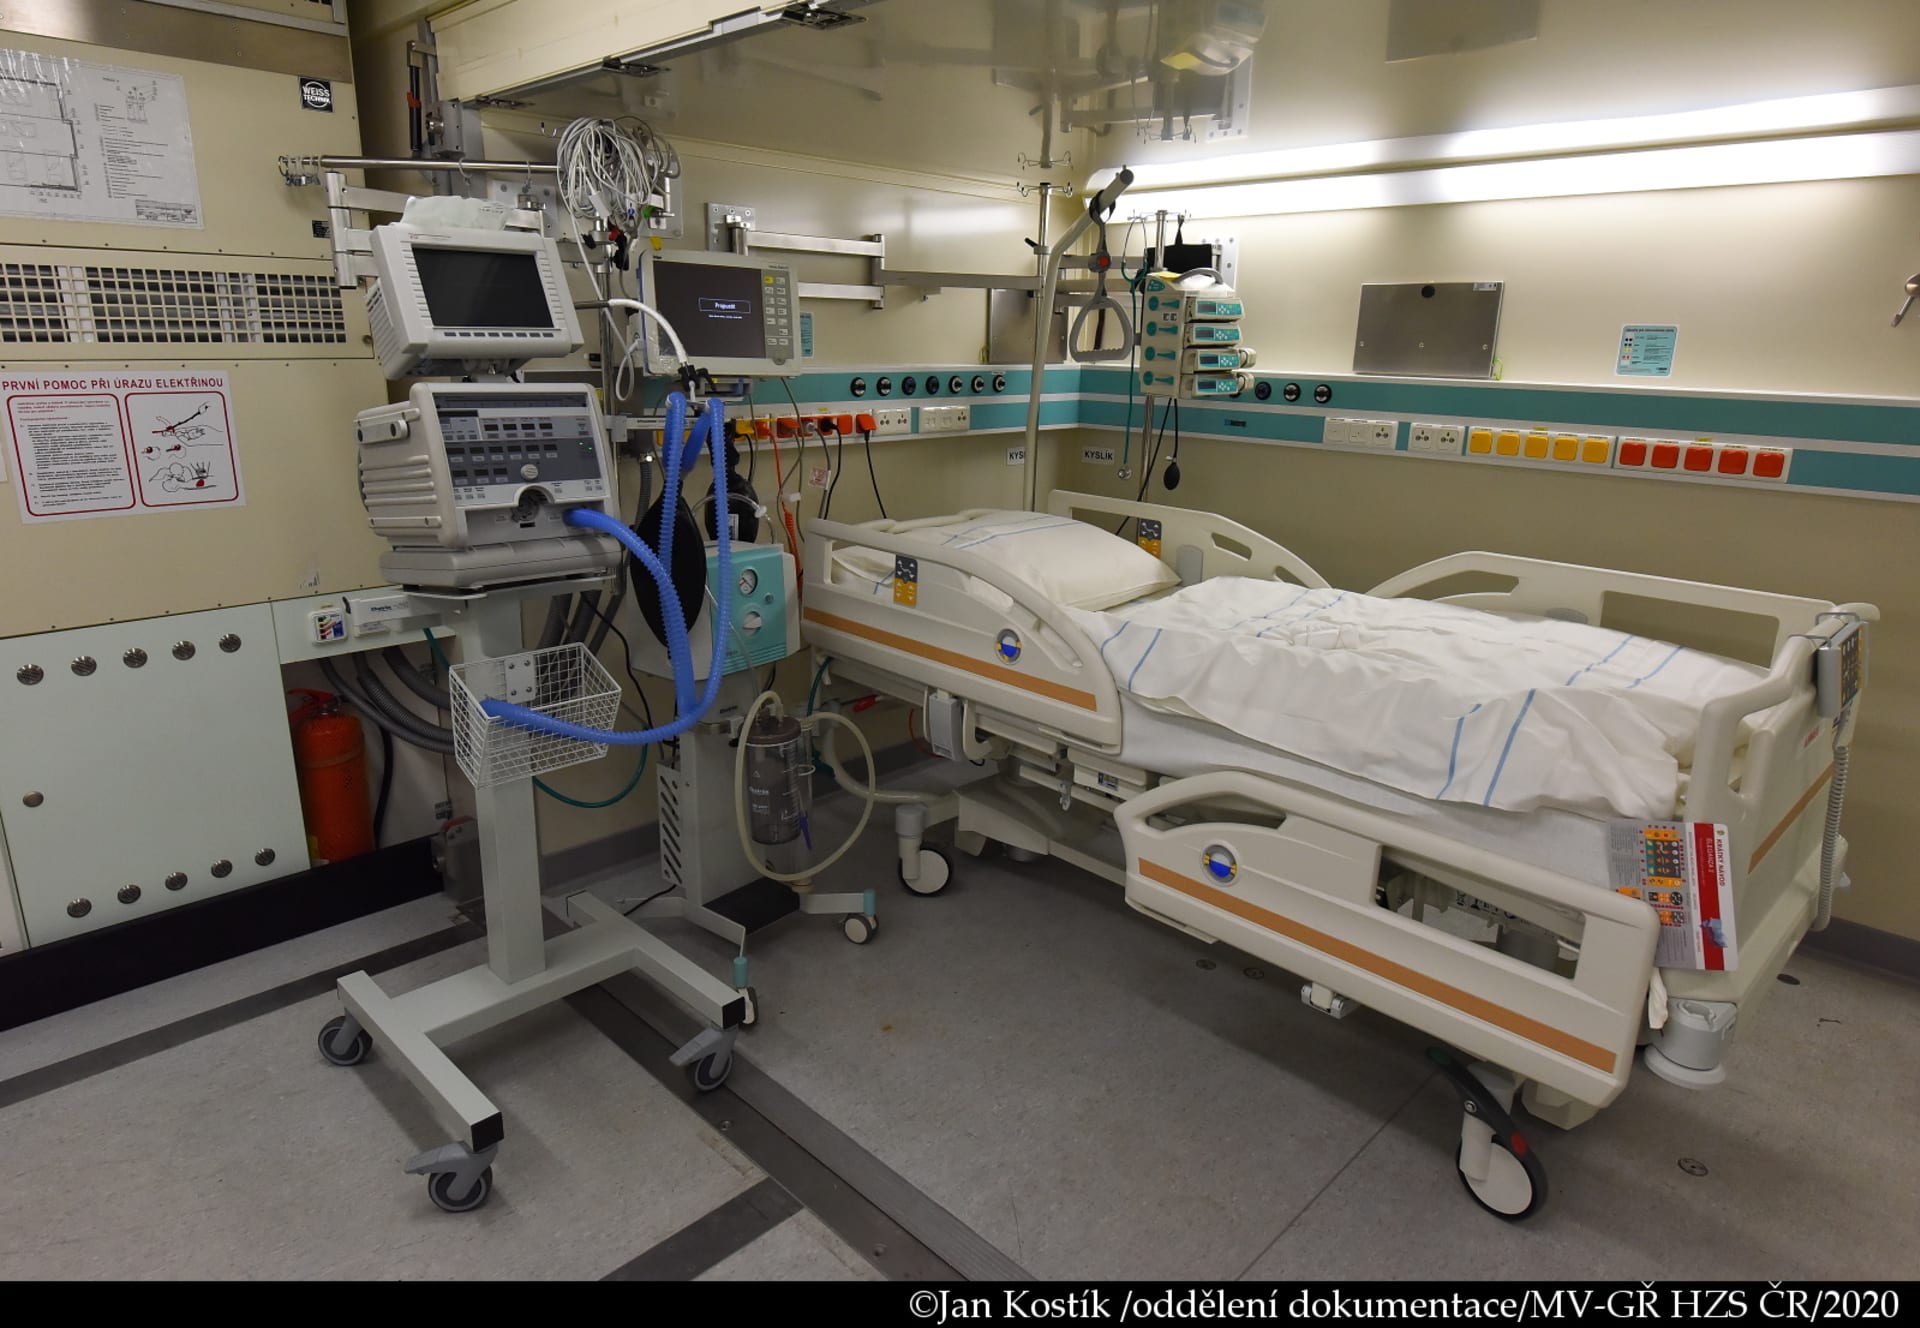 Pokud by nájem trval celou dobu, tedy od poloviny října do konce února, stát zaplatí za pronájem prázdné polní nemocnice téměř 80 milionů korun. 